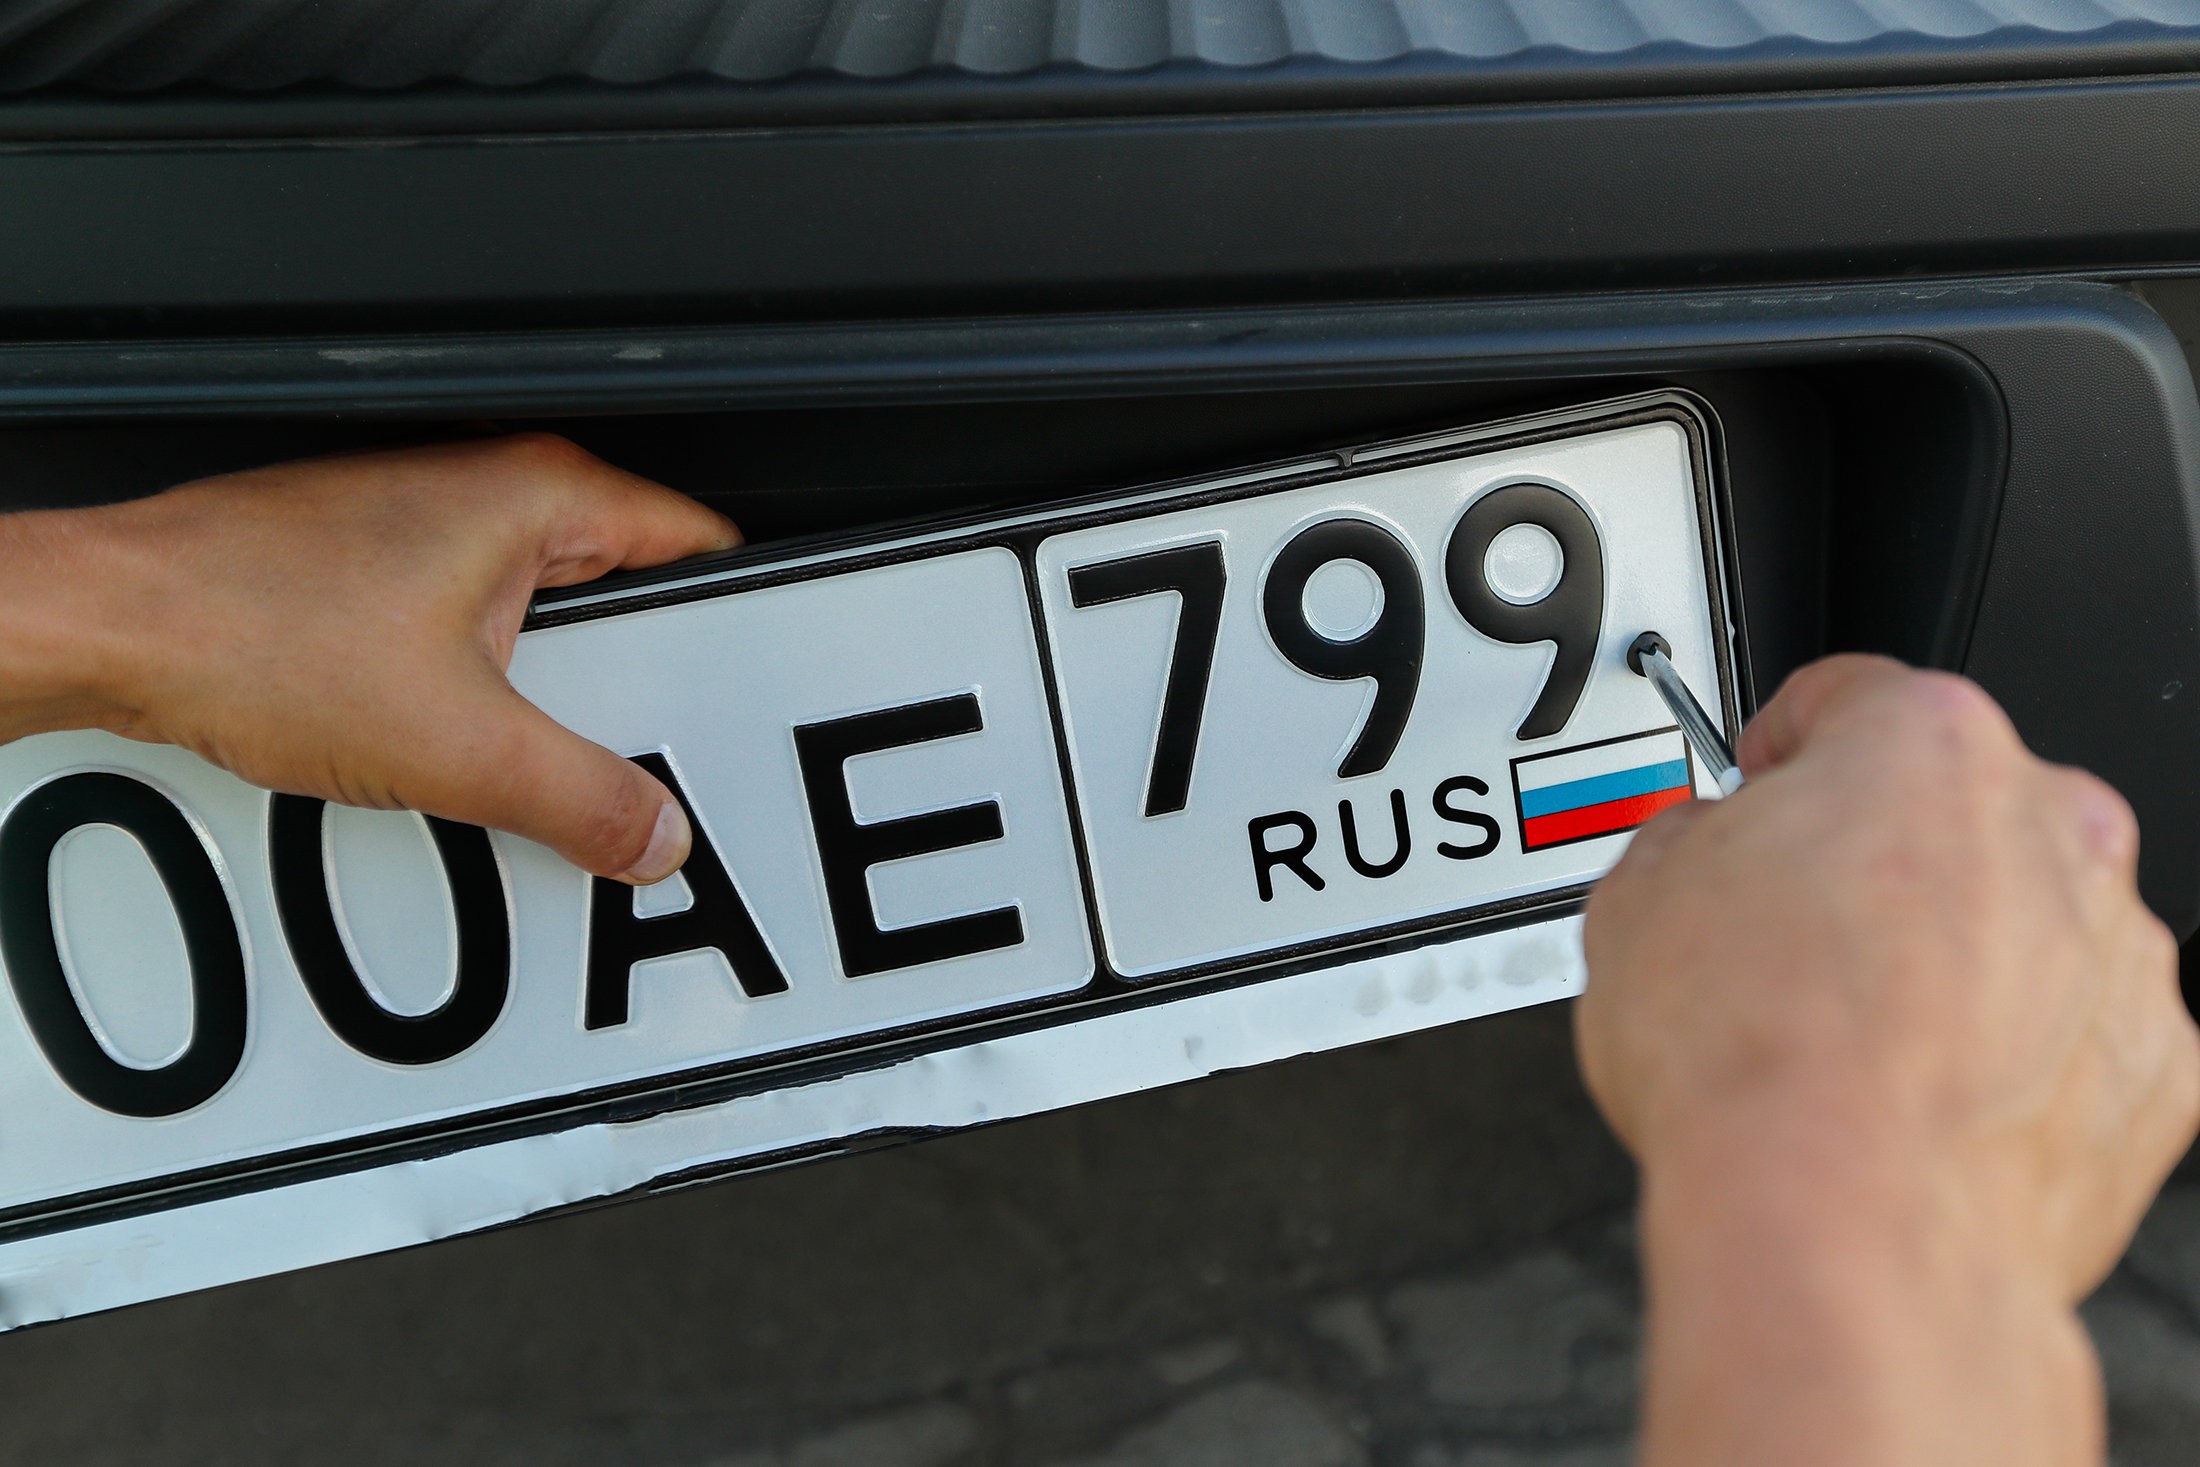 Любой номер машины. Автомобильный номерной знак. Регистрационный знак автомобиля. Российские номерные знаки. Табличка гос номера.